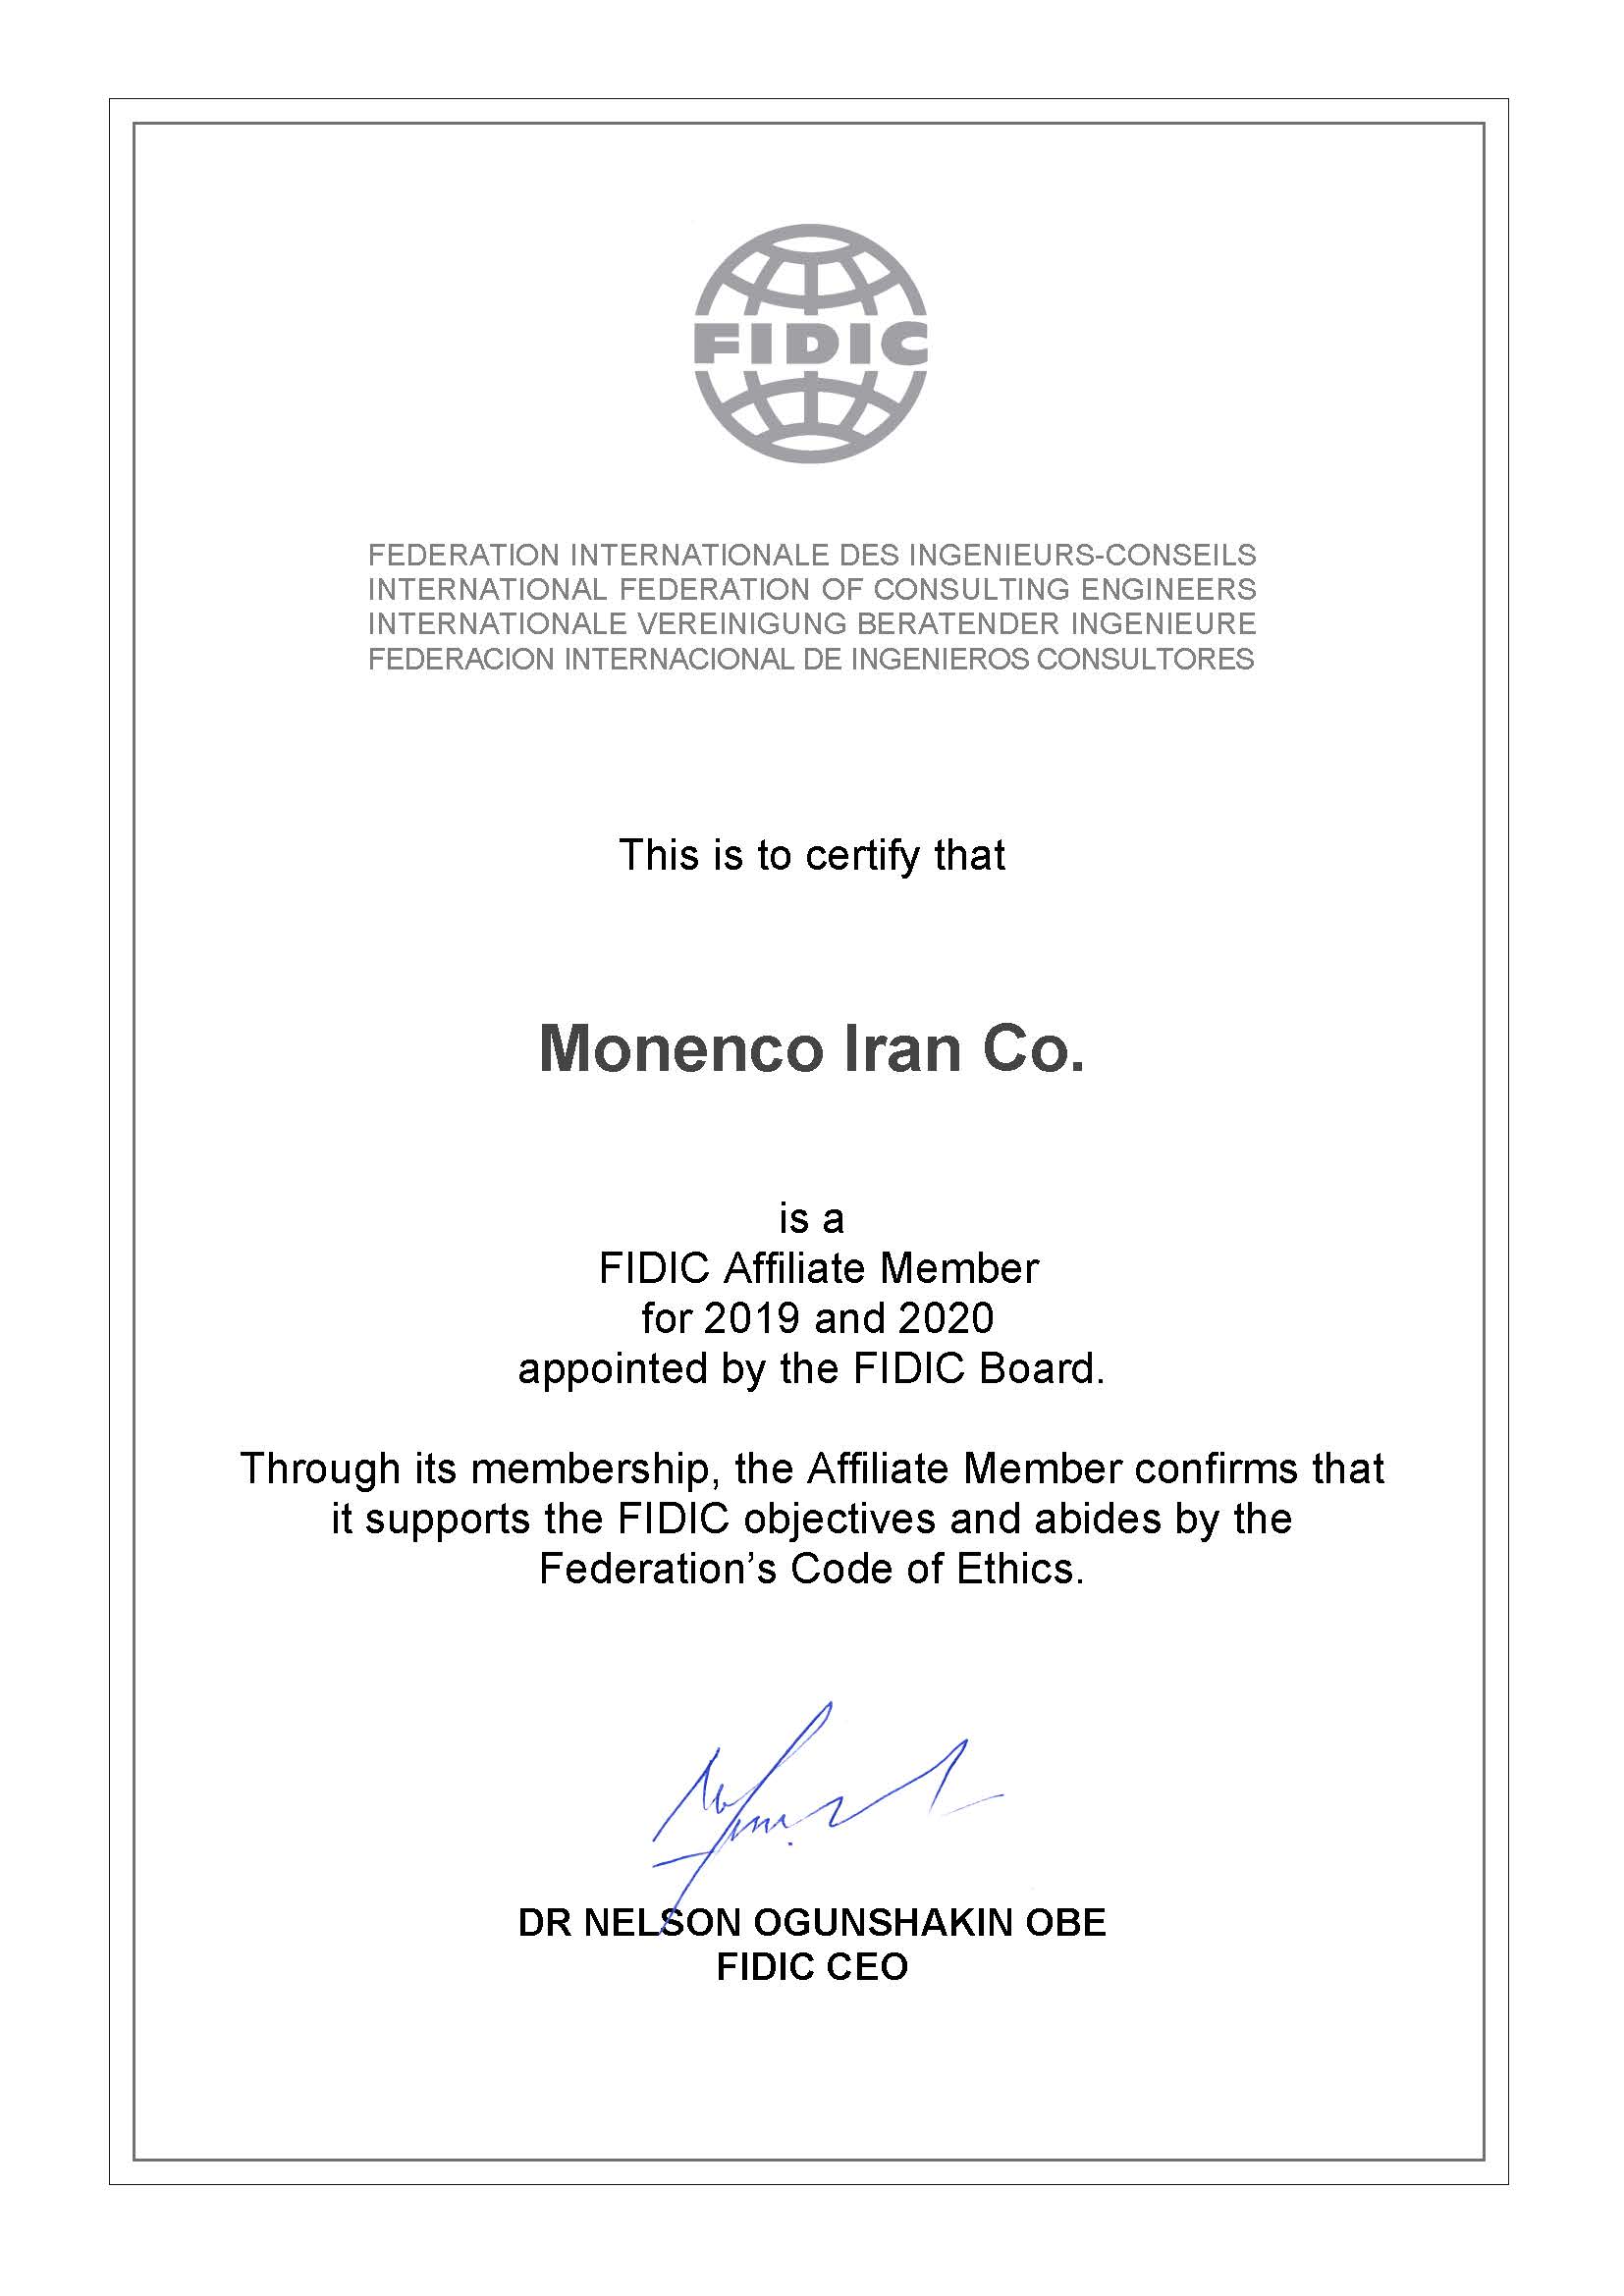 عضویت موننکو ایران در انجمن فیدیک (FIDIC)